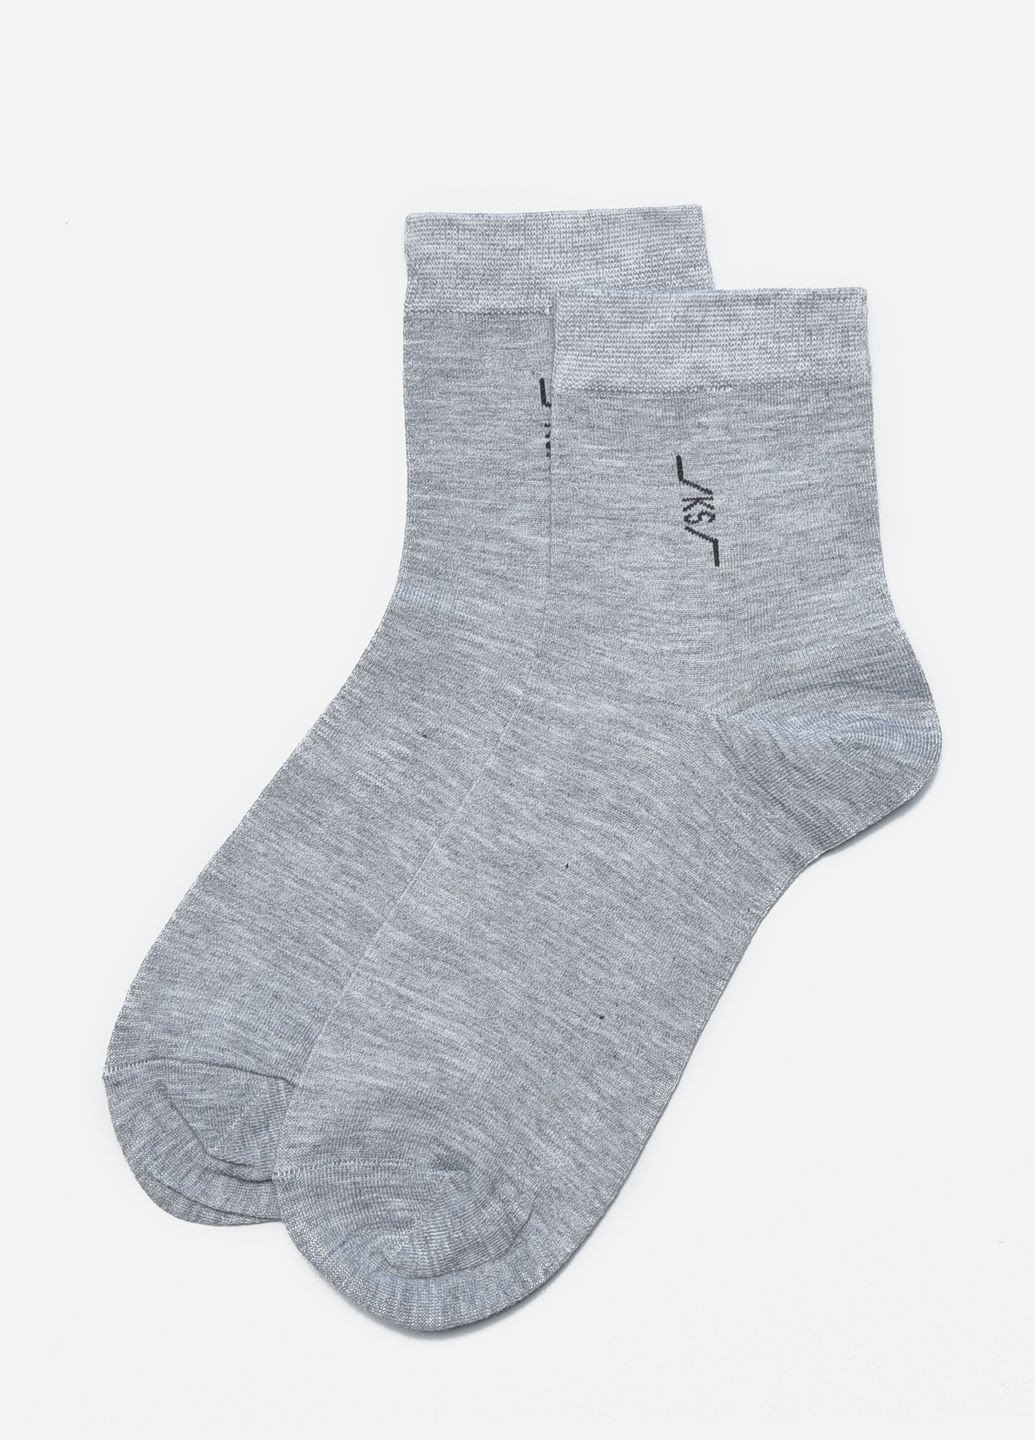 Носки мужские стрейч серого цвета размер 41-47 Let's Shop (267167110)